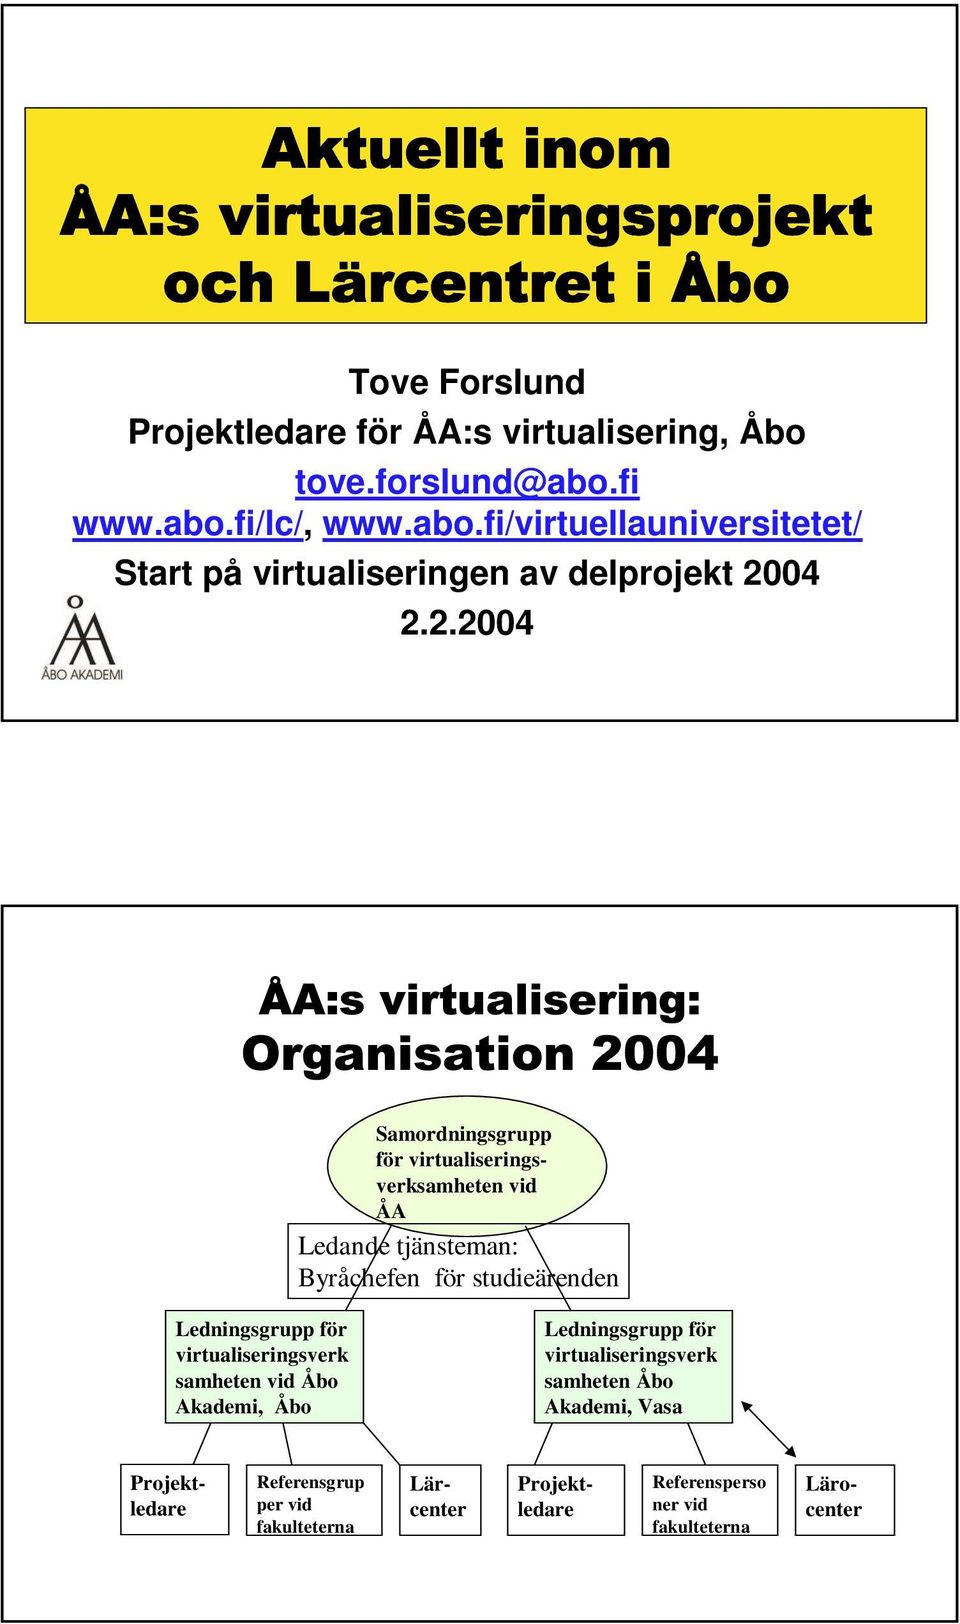 04 2.2.2004 Samordningsgrupp för virtualiseringsverksamheten vid ÅA Ledande tjänsteman: Byråchefen för studieärenden Ledningsgrupp för